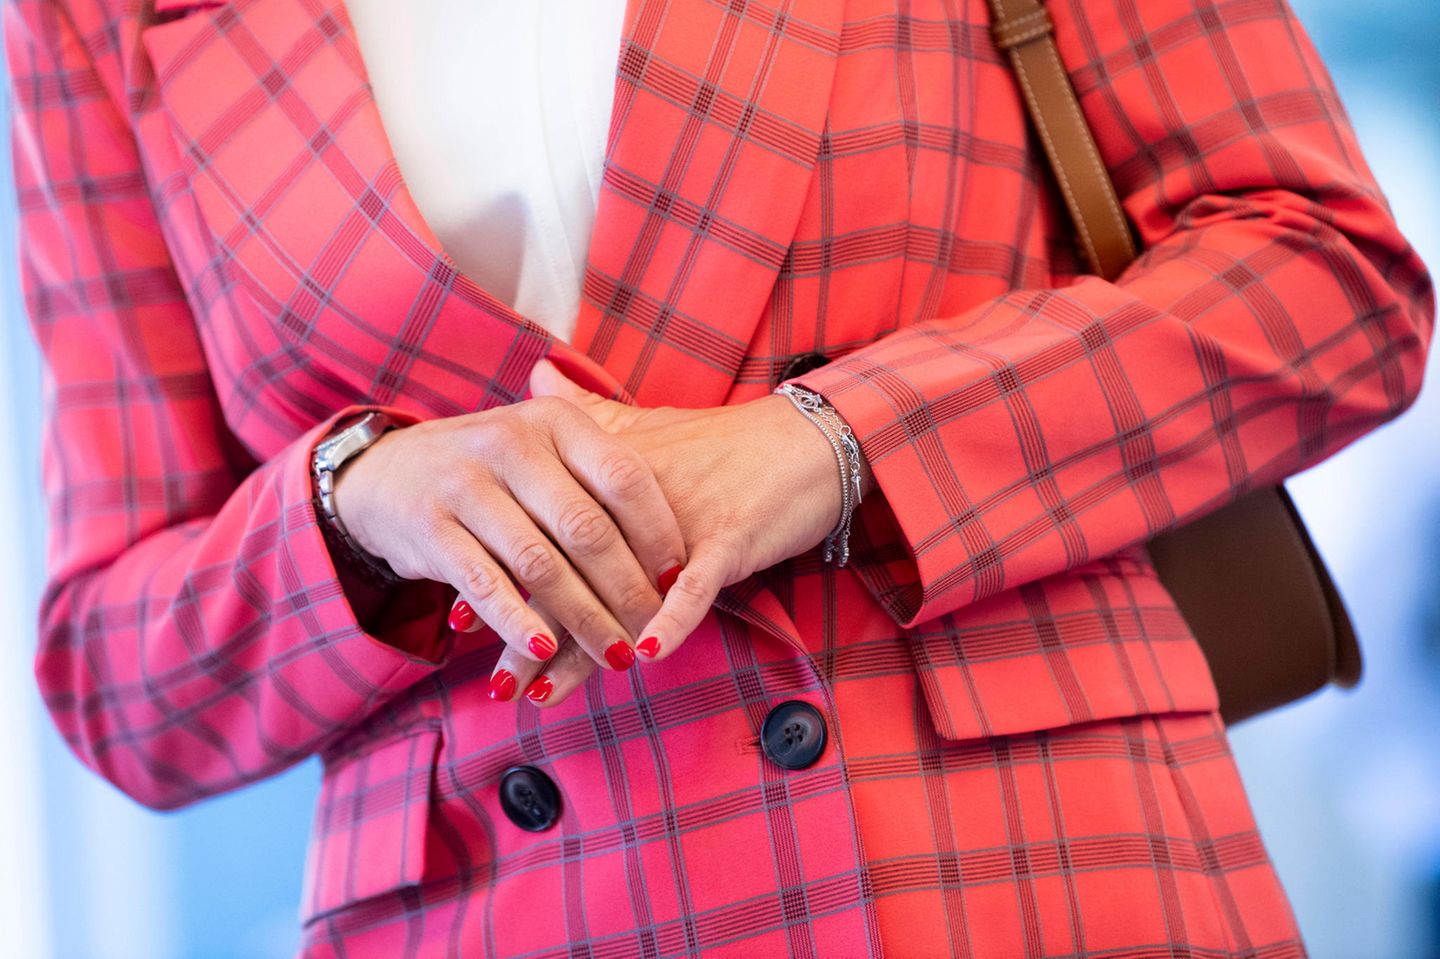 Von dezent bis knallig: Ihre Nägel hat die schwedische Prinzessin nämlich passend zum Outfit in einem rötlichen Pink bepinselt. Für Royal-Verhältnisse auf jeden Fall ein gewagter Look.